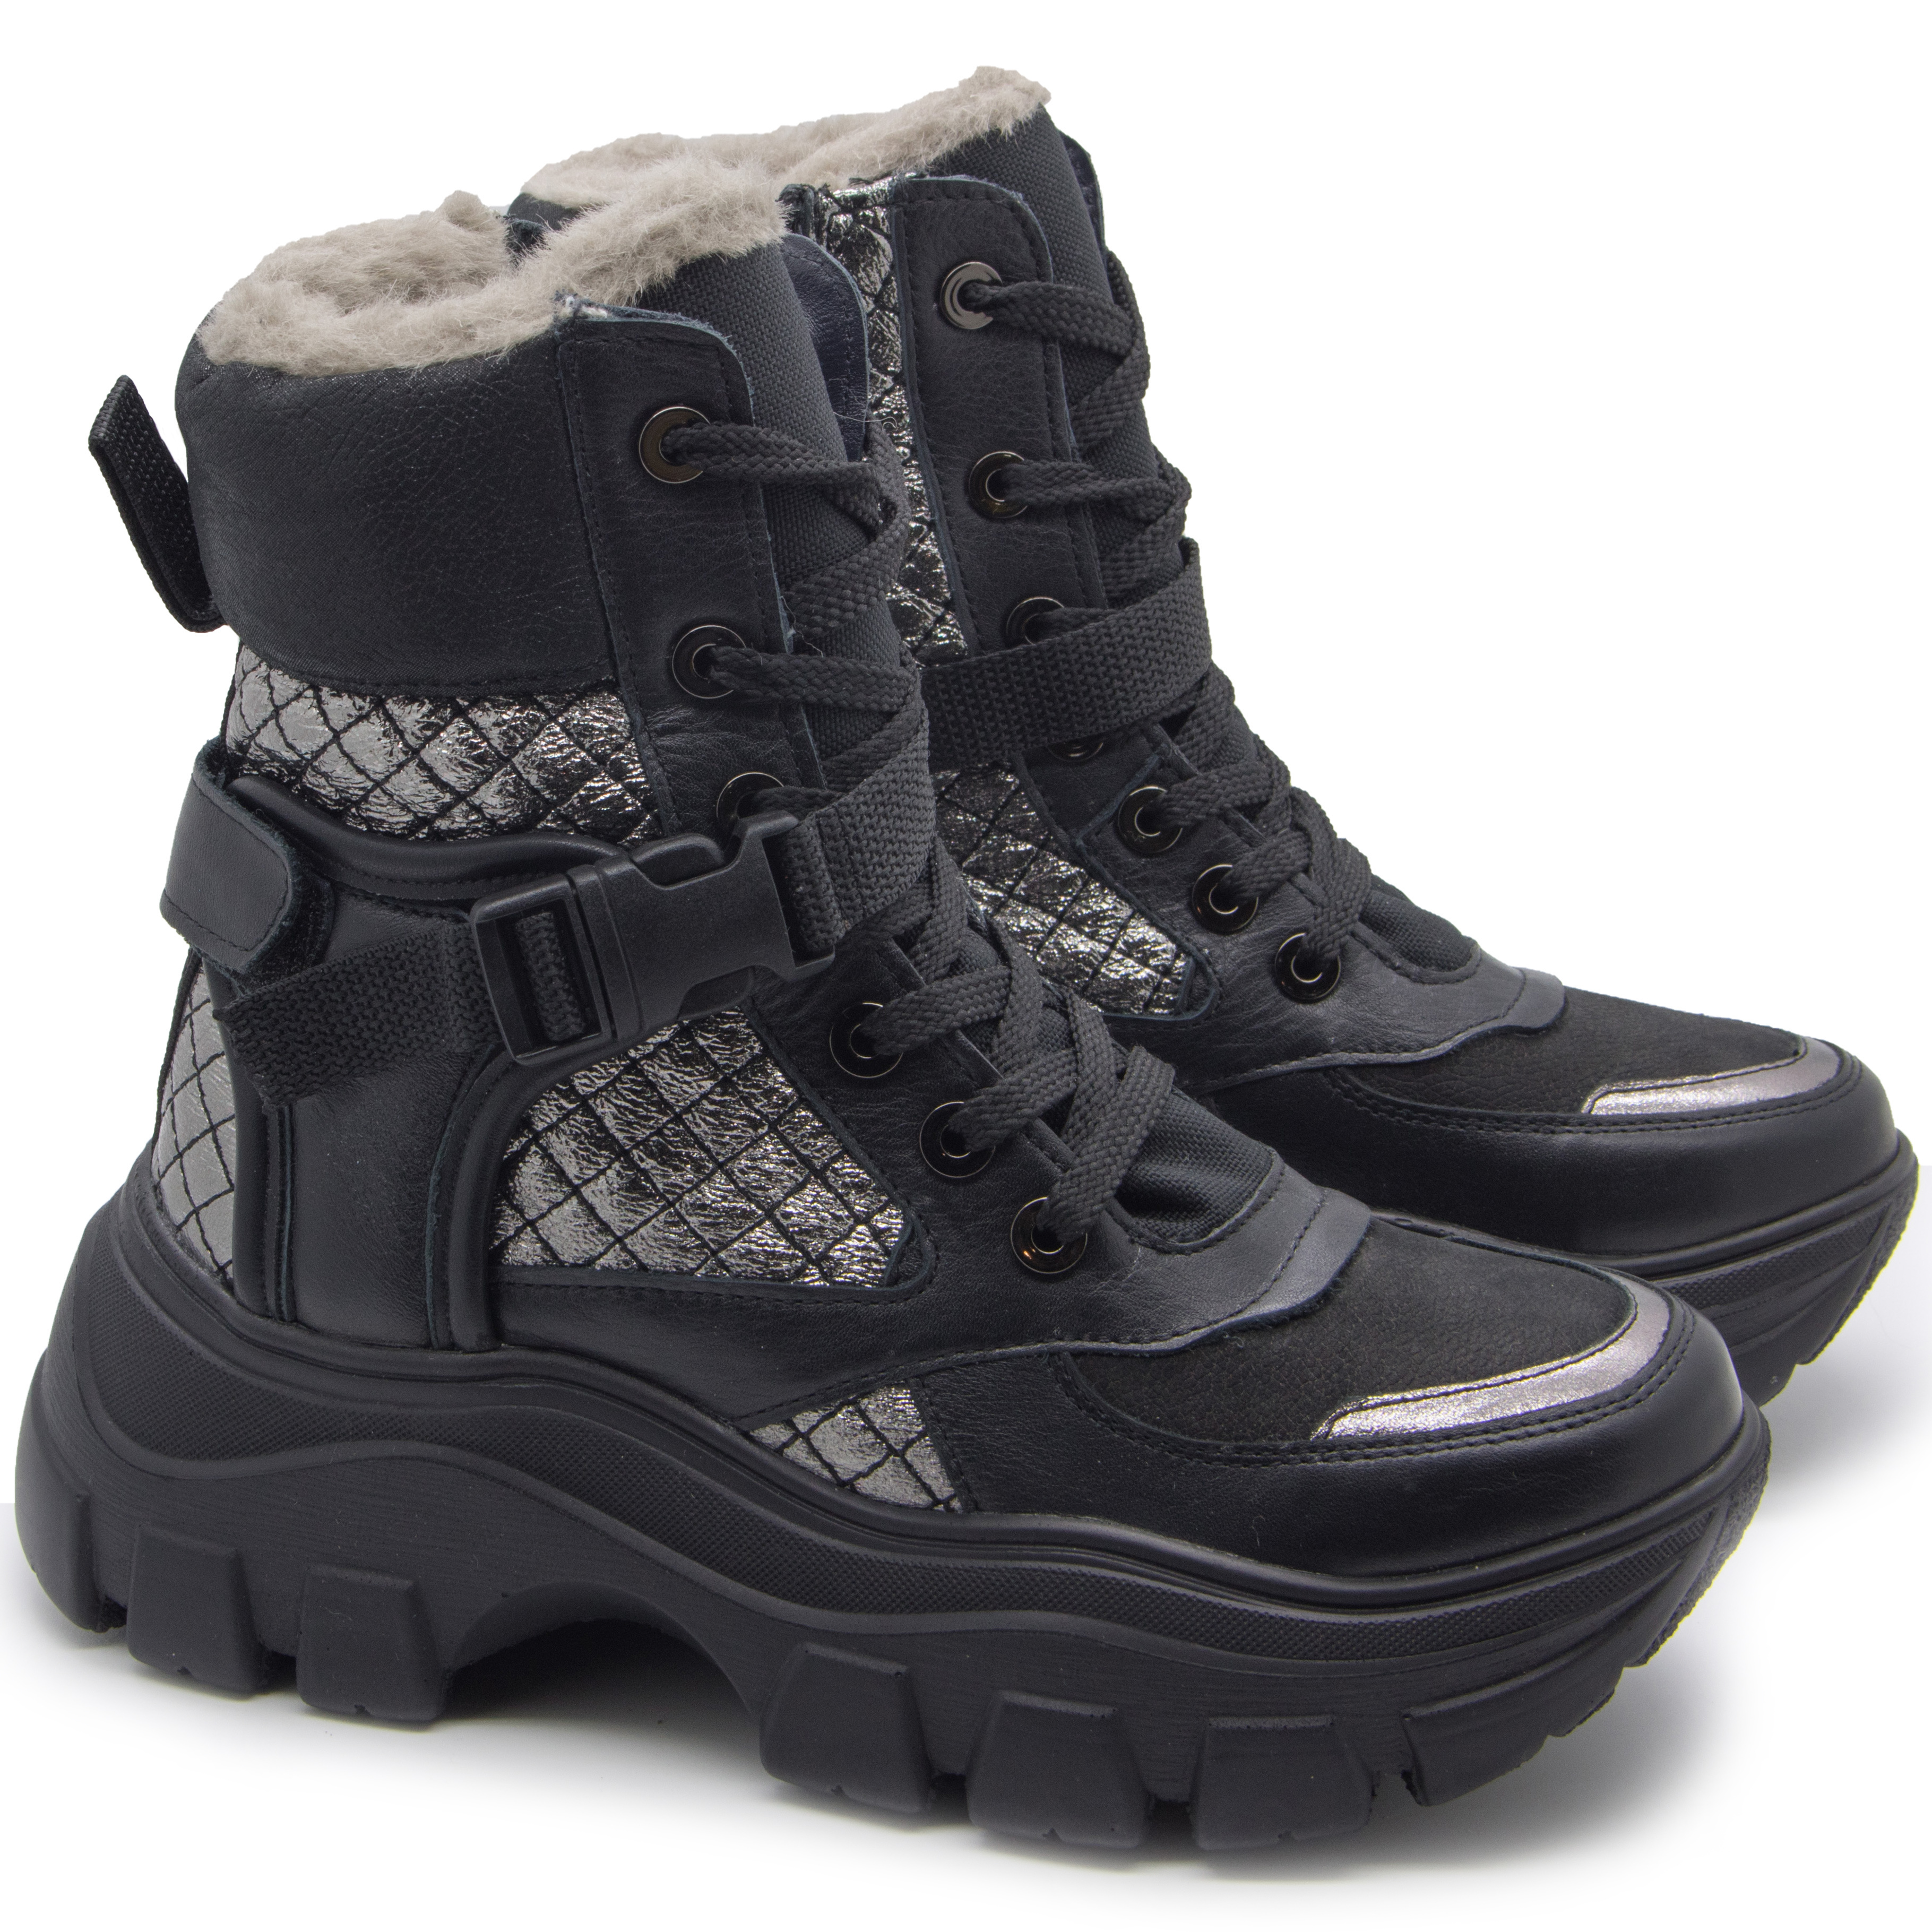 Зимние ботинки (2225) материал Нубук, цвет Черный  для девочки 39-40 размеры – Sole Kids, Днепр. Фото 4